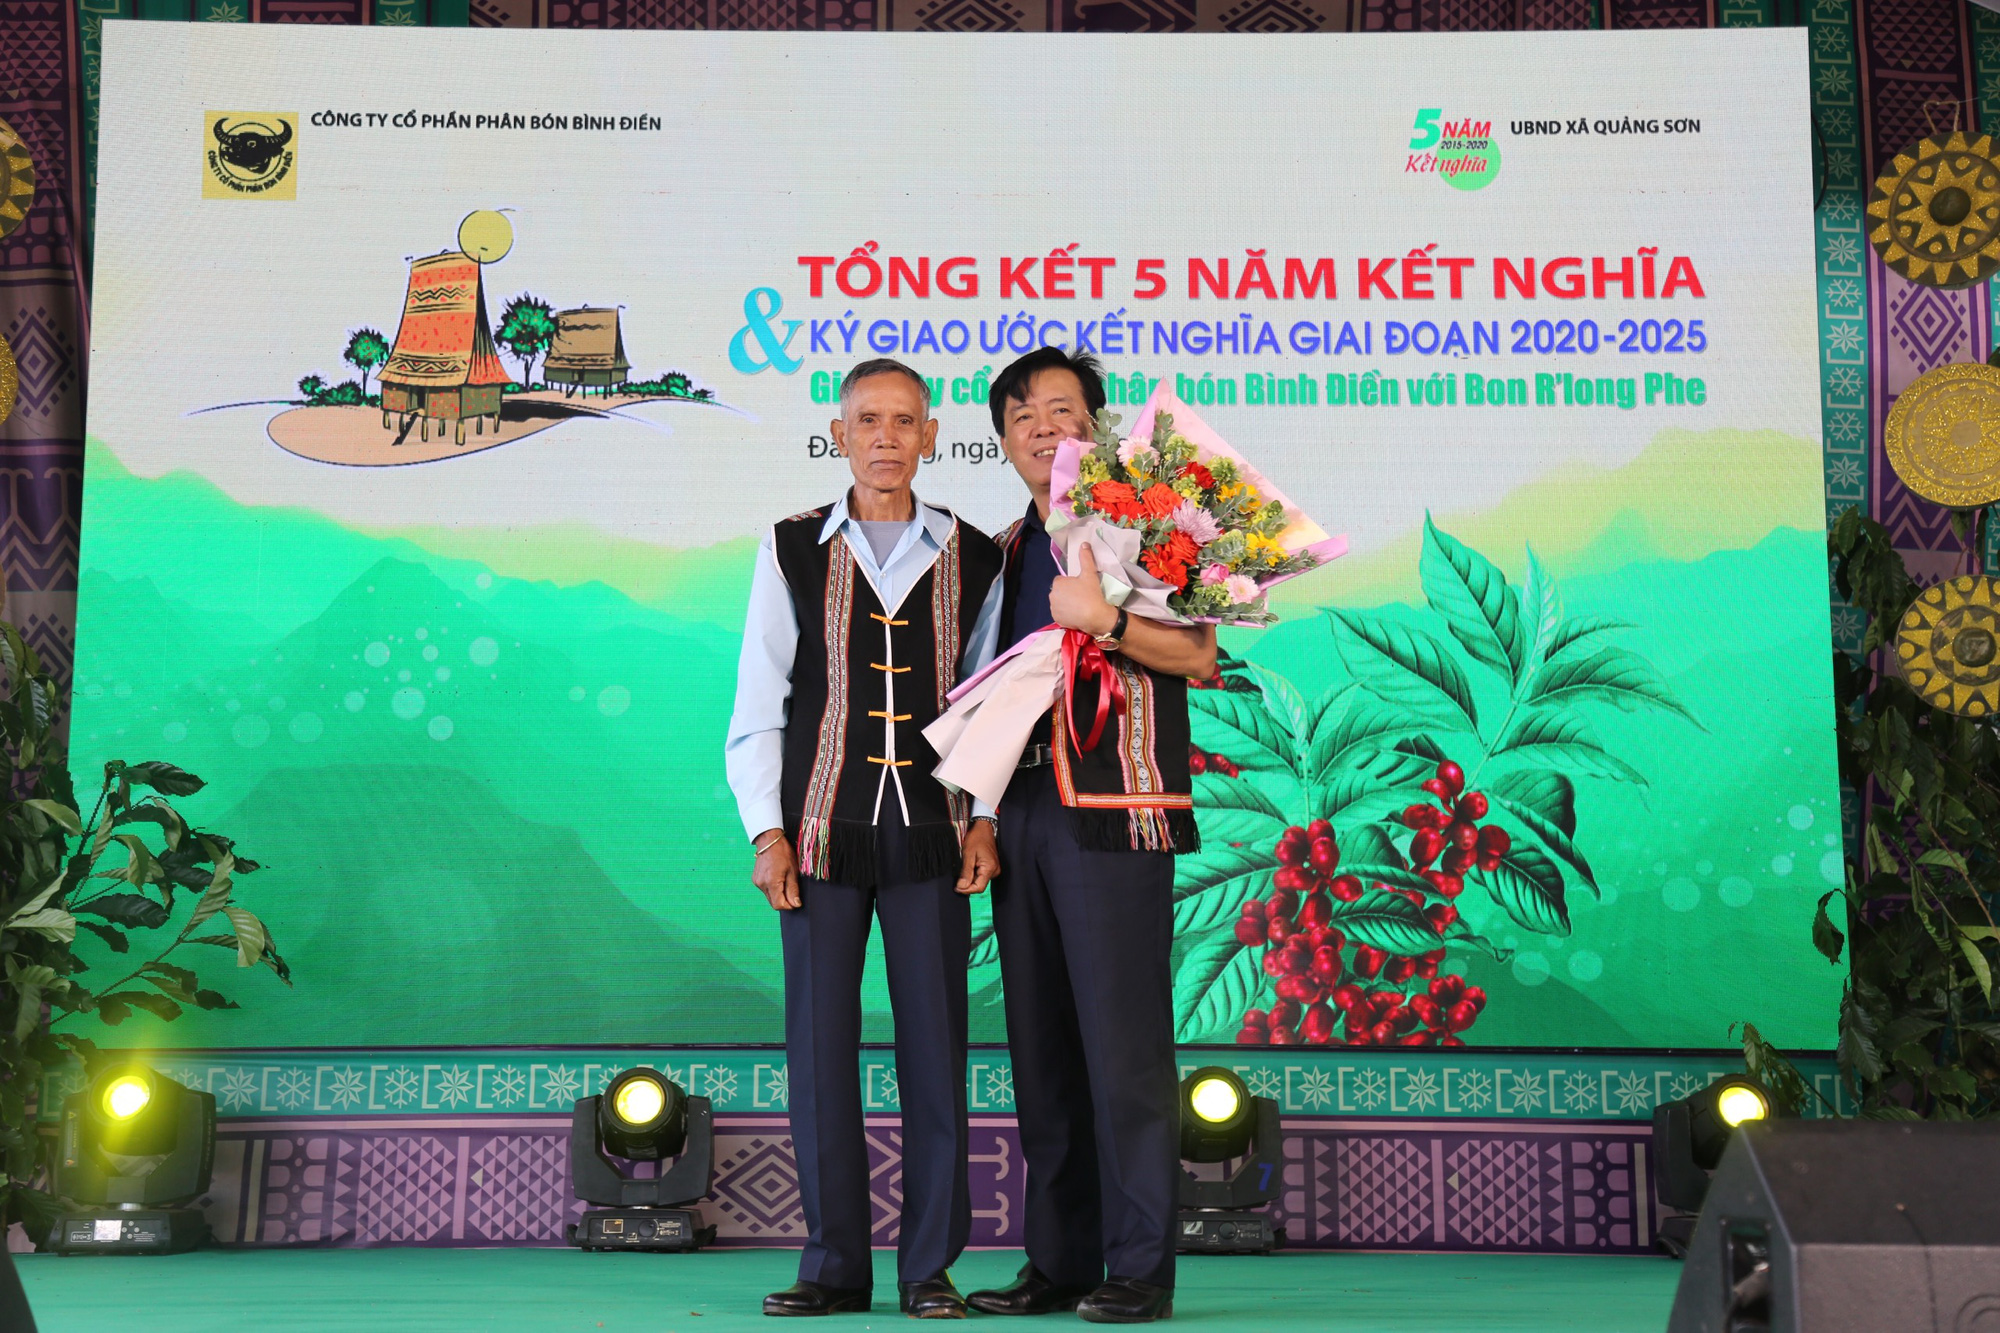 Già làng M Bốch, bon R’long Phe (bên trái) và ông Ngô Văn Đông, Tổng Giám đốc Công ty phân bón Bình Điền tại Lễ Tổng kết 5 năm kết nghĩa và ký giao ước kết nghĩa giai đoạn 2020-2025 giữa bon R’long Phe và Công ty phân bón Bình Điền.